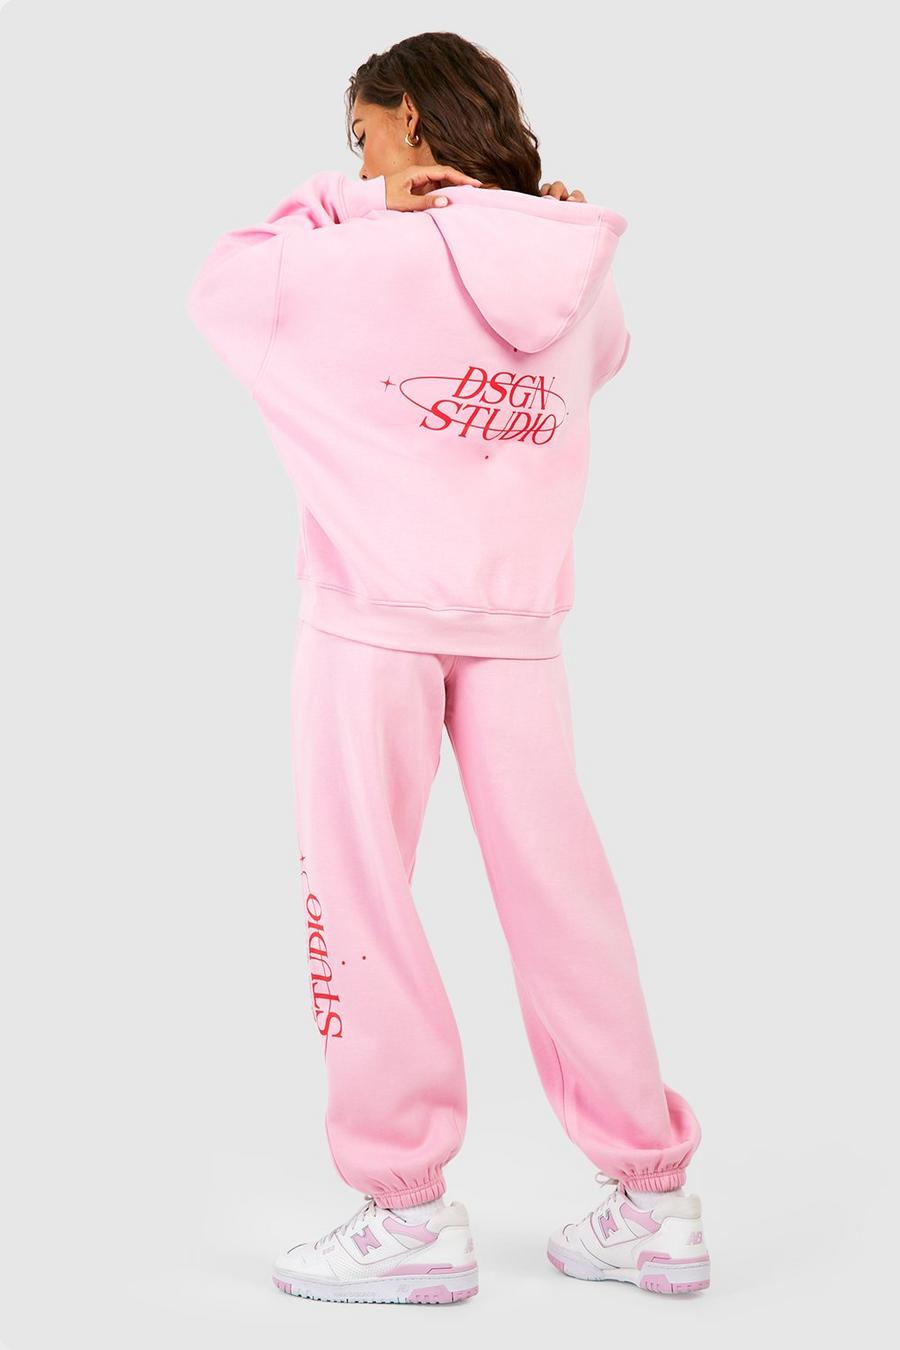 Survêtement imprimé Dsgn Studio avec sweat à capuche et jogging, Light pink image number 1